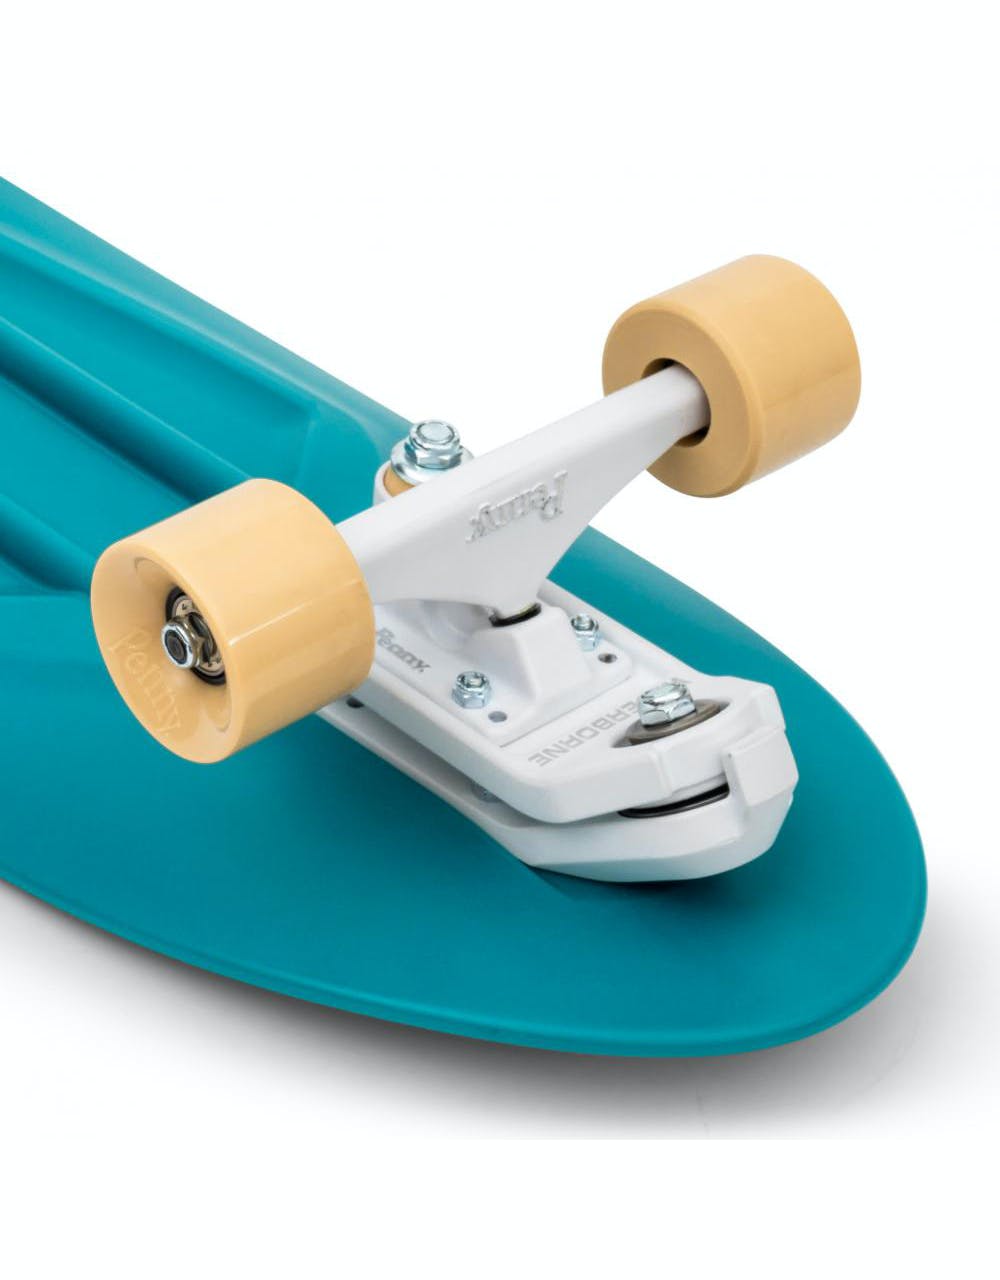 Penny Skateboards Surfskate Cruiser - 9" x 29" - Ocean Mist